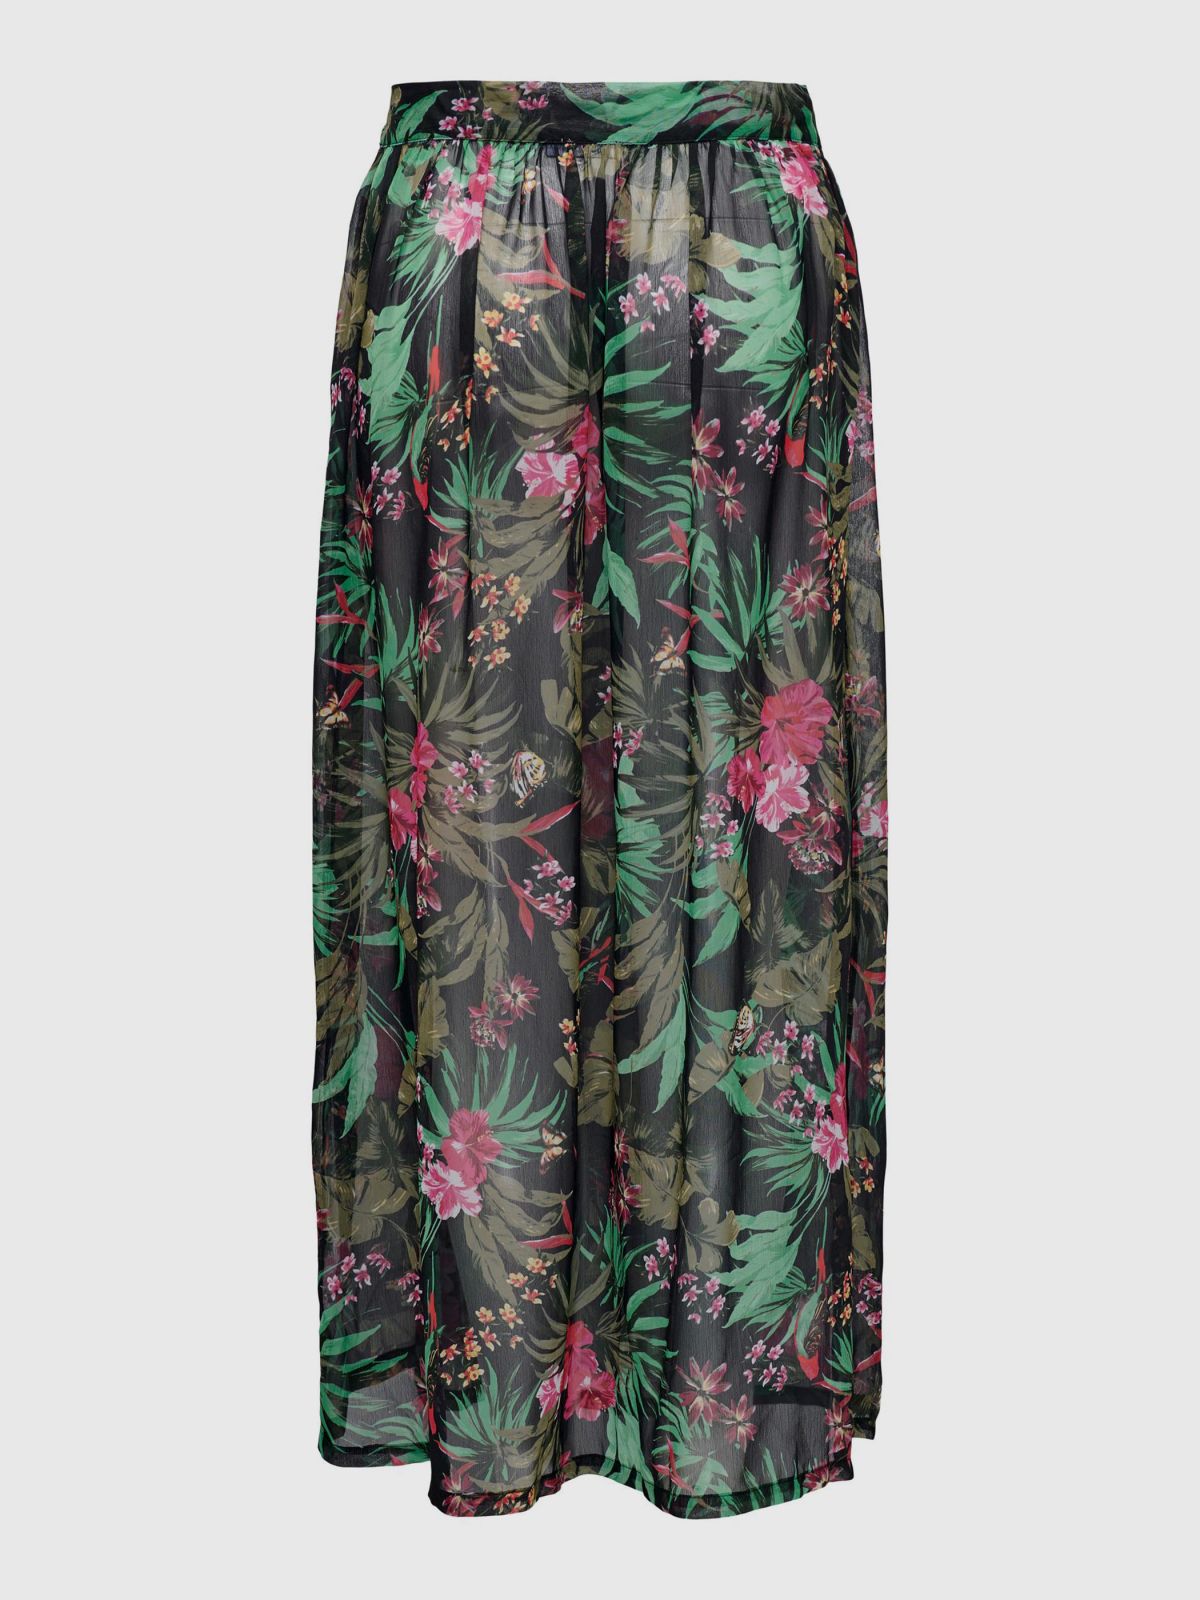  חצאית חוף שקפקפה בהדפס פרחים / נשים של ONLY